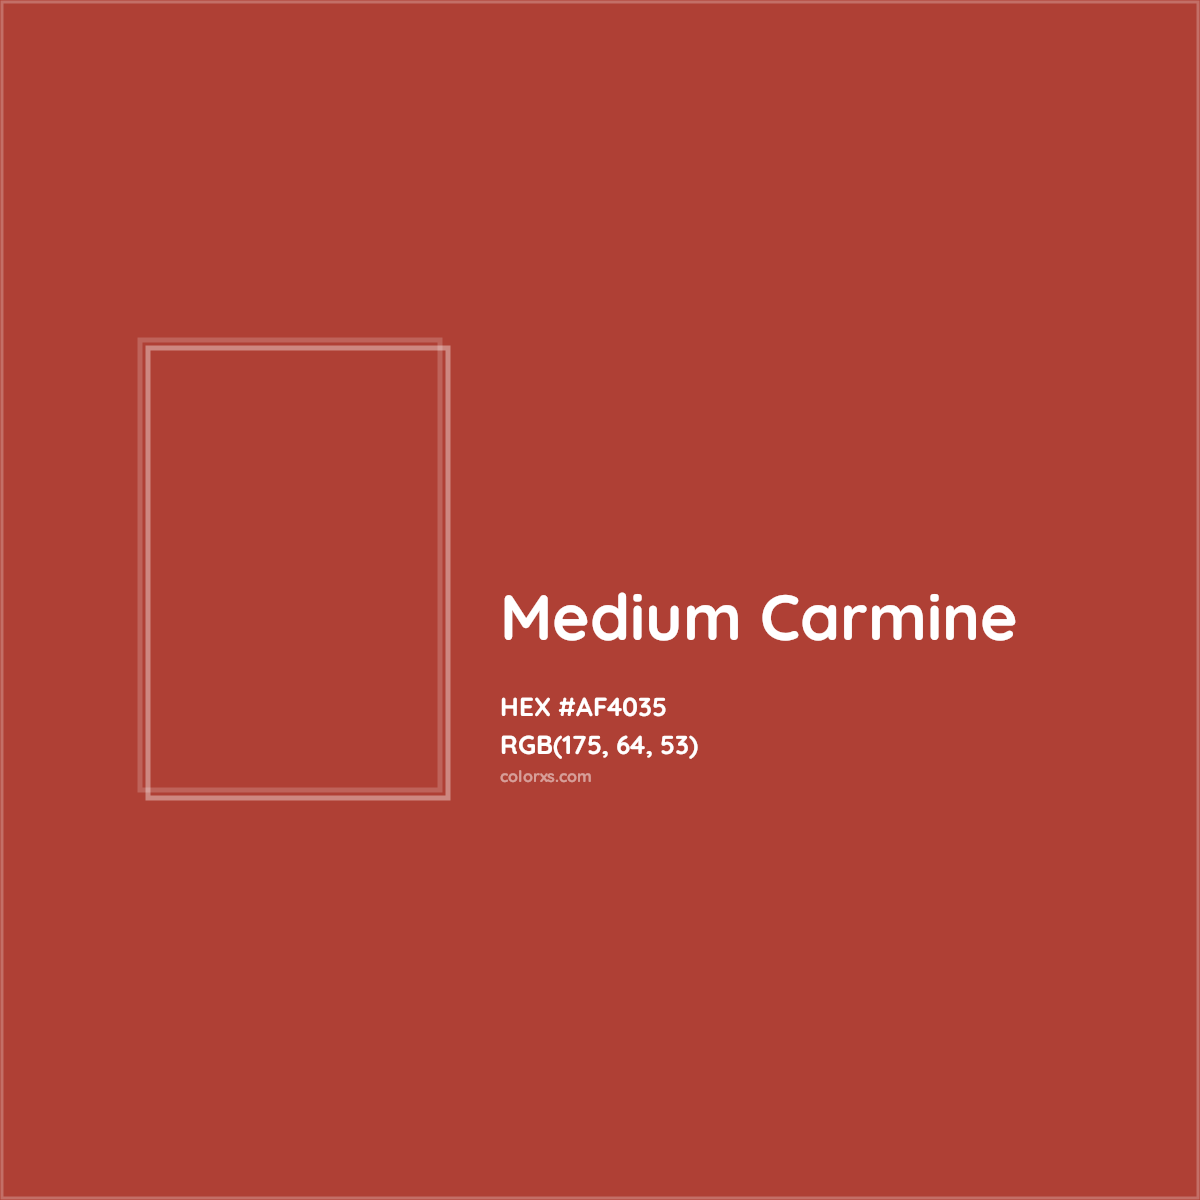 HEX #AF4035 Medium Carmine Other - Color Code